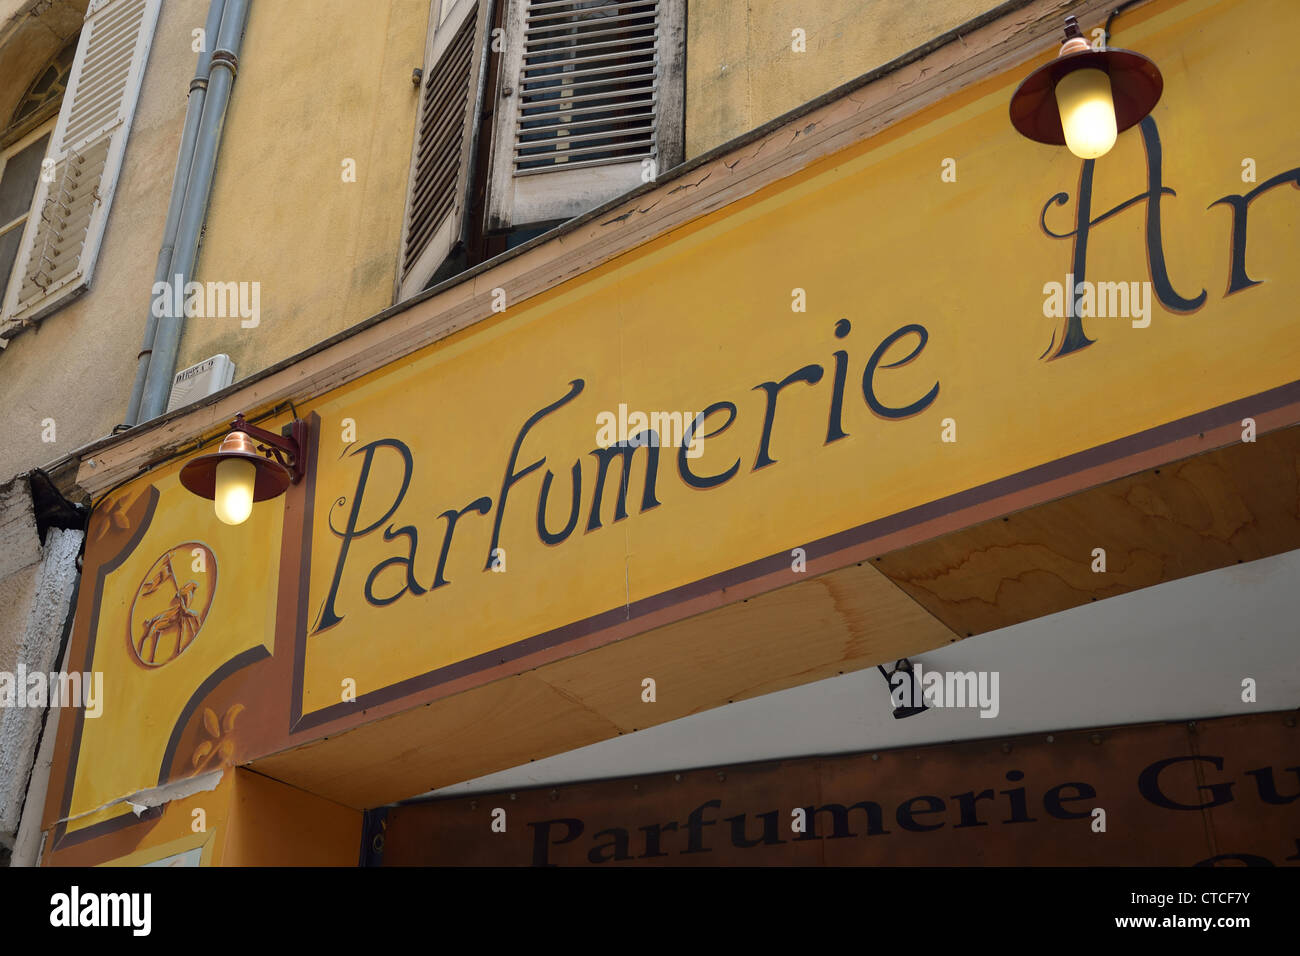 Parfumerie Bouchara, Old Town, Rue Marcel Journet, Grasse, Côte d'Azur, Alpes-Maritimes, Provence-Alpes-Côte d'Azur, France Stock Photo